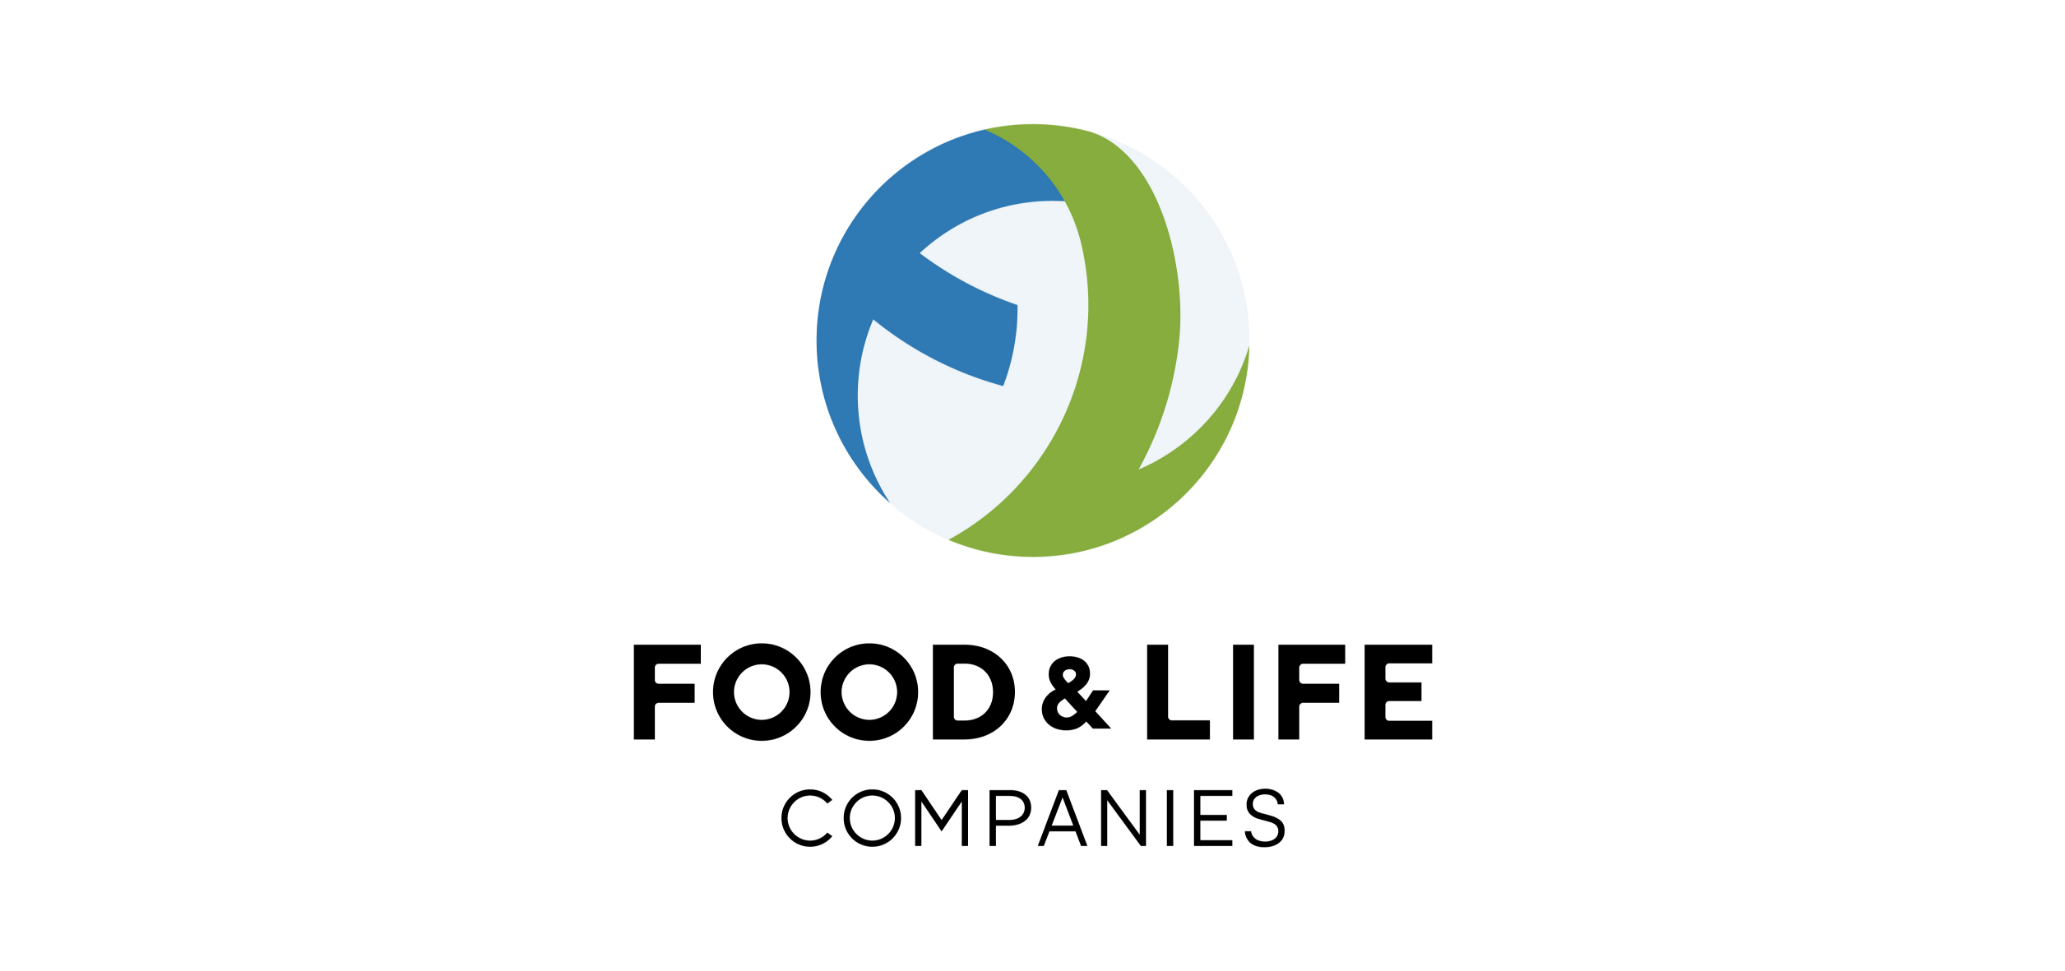 株式会社FOOD & LIFE COMPANIES